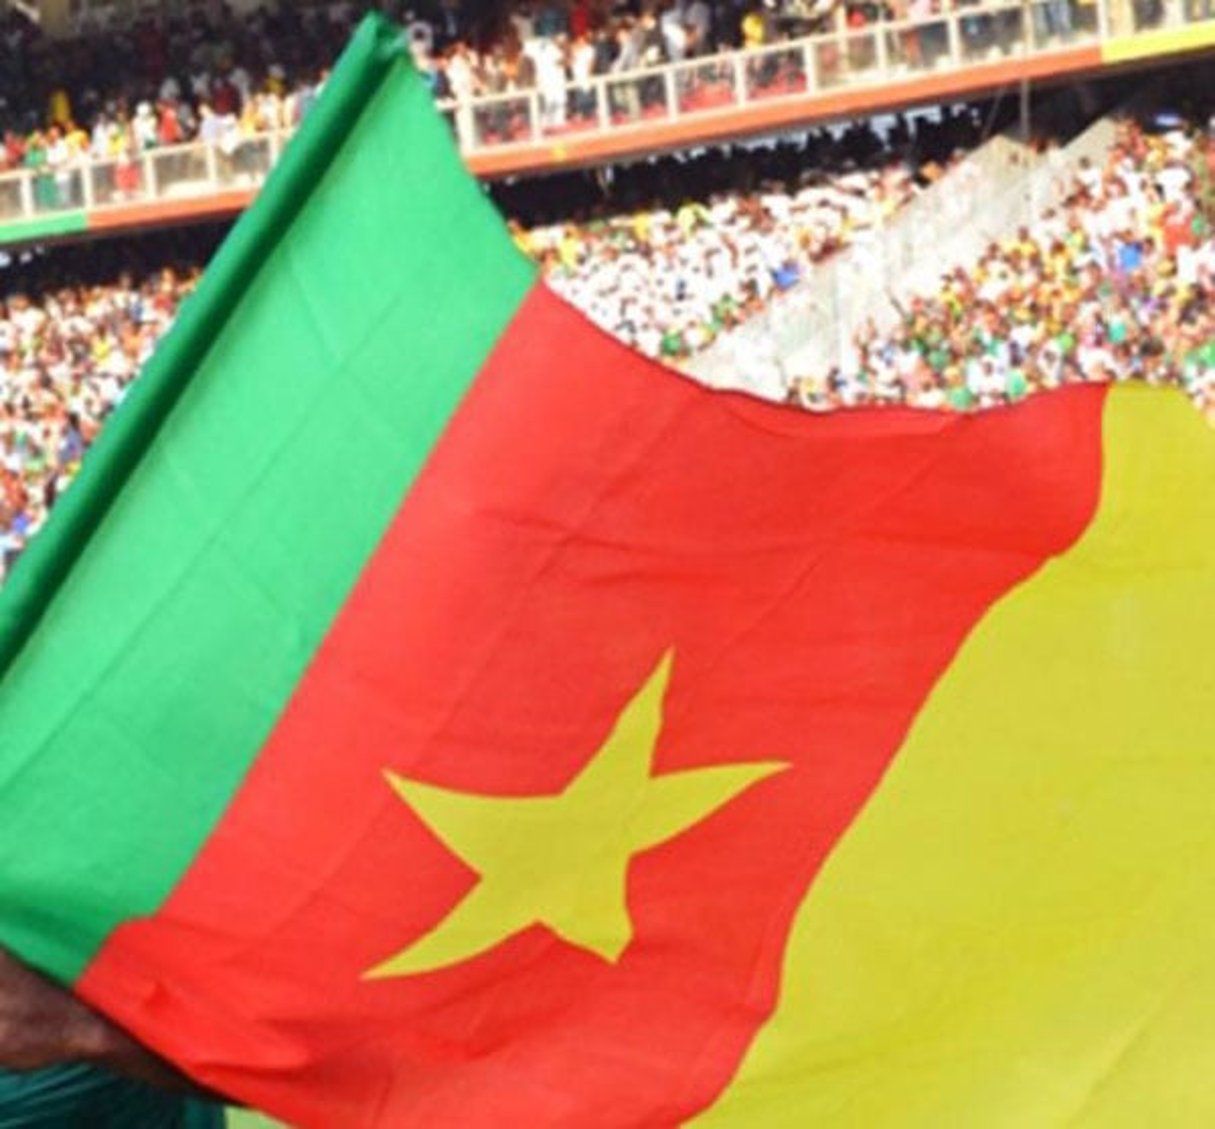 La foule en liesse, après la qualification du Cameroun à la Coupe du monde 2014. © STR/AFP